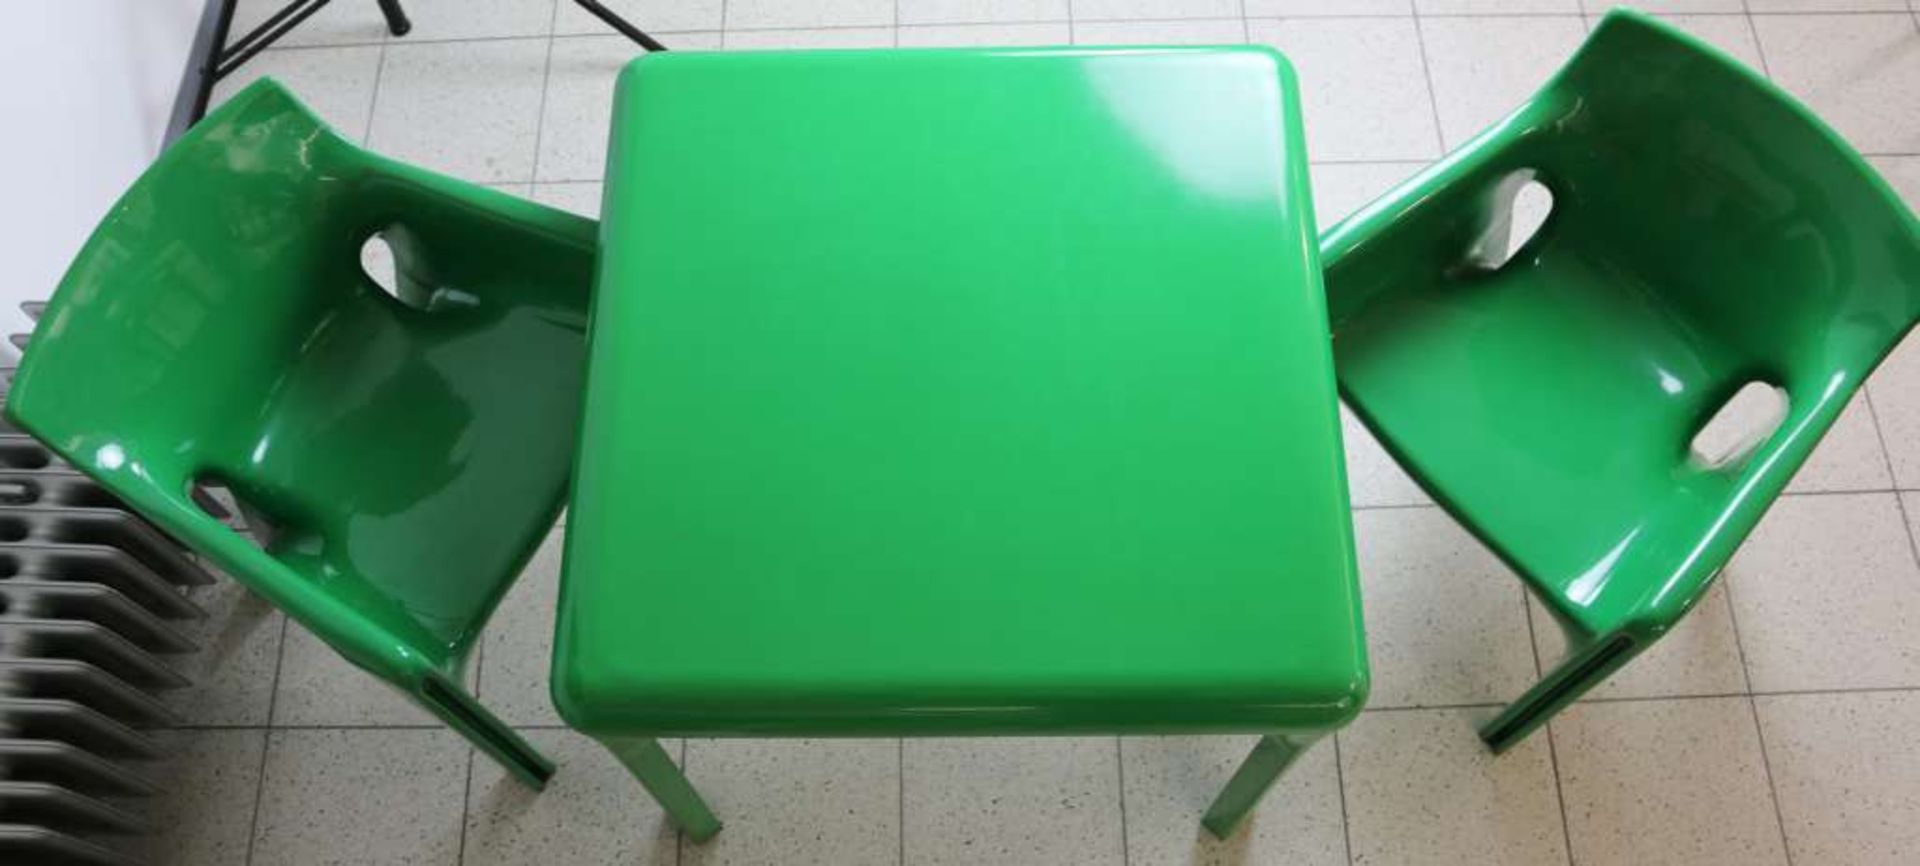 Artemide Tisch und zwei Stühle, grün, Design Vico Magistretti 1968. Paar Armlehnstühle 'Gaudi',